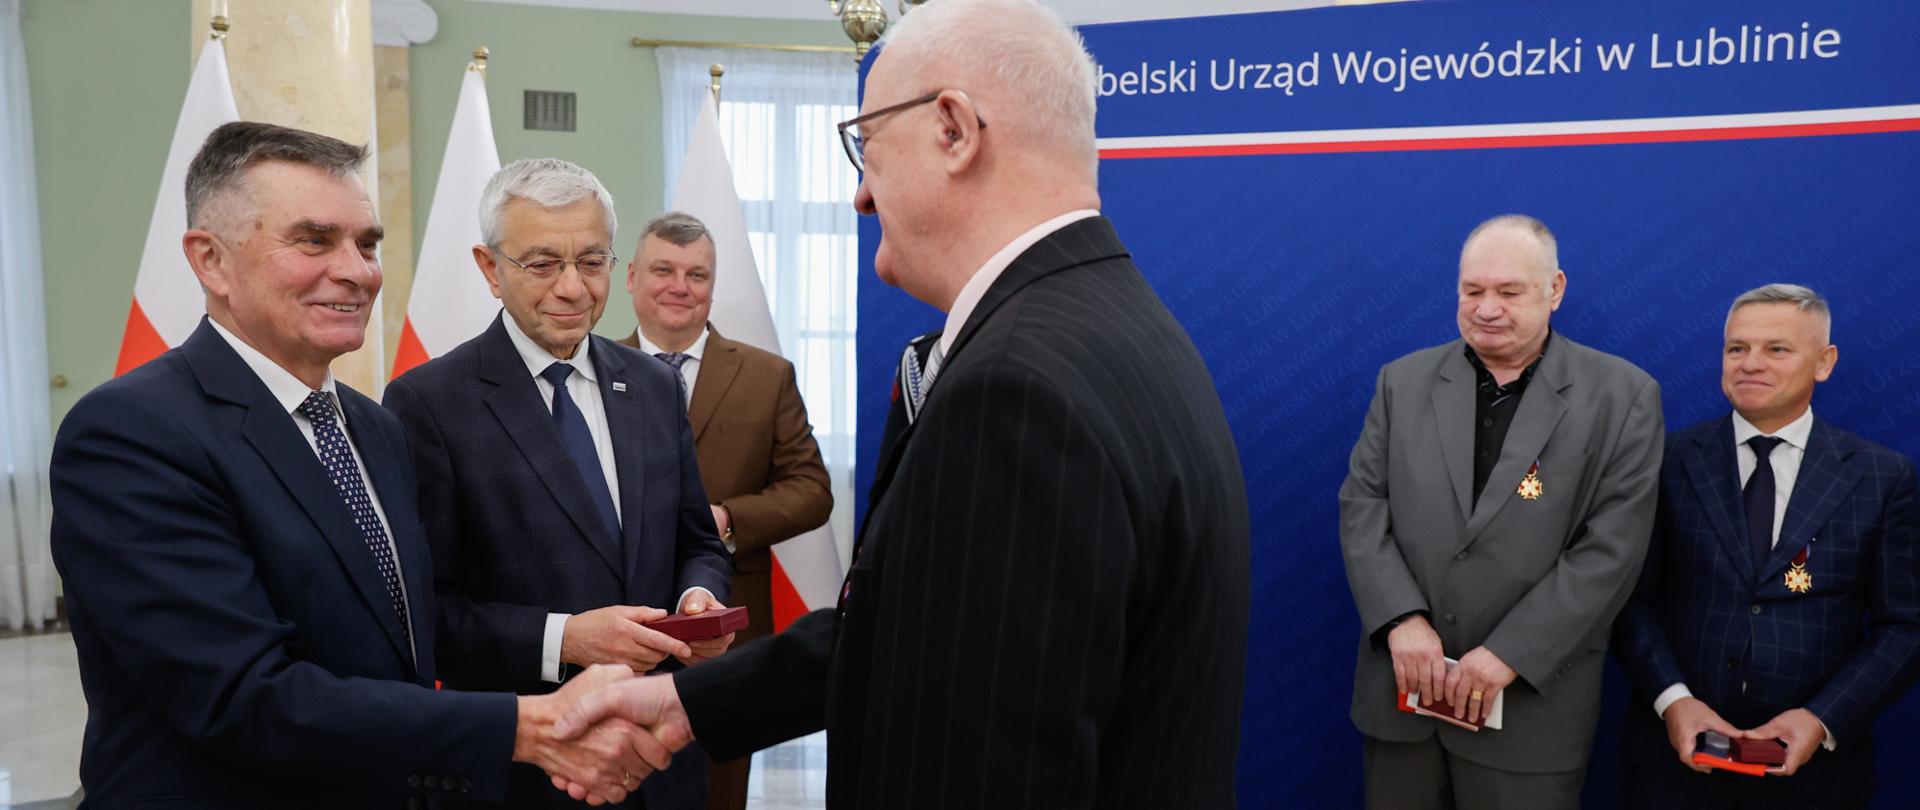 Wojewoda lubelski Lech Sprawka gratuluje mężczyźnie otrzymanego odznaczenia.